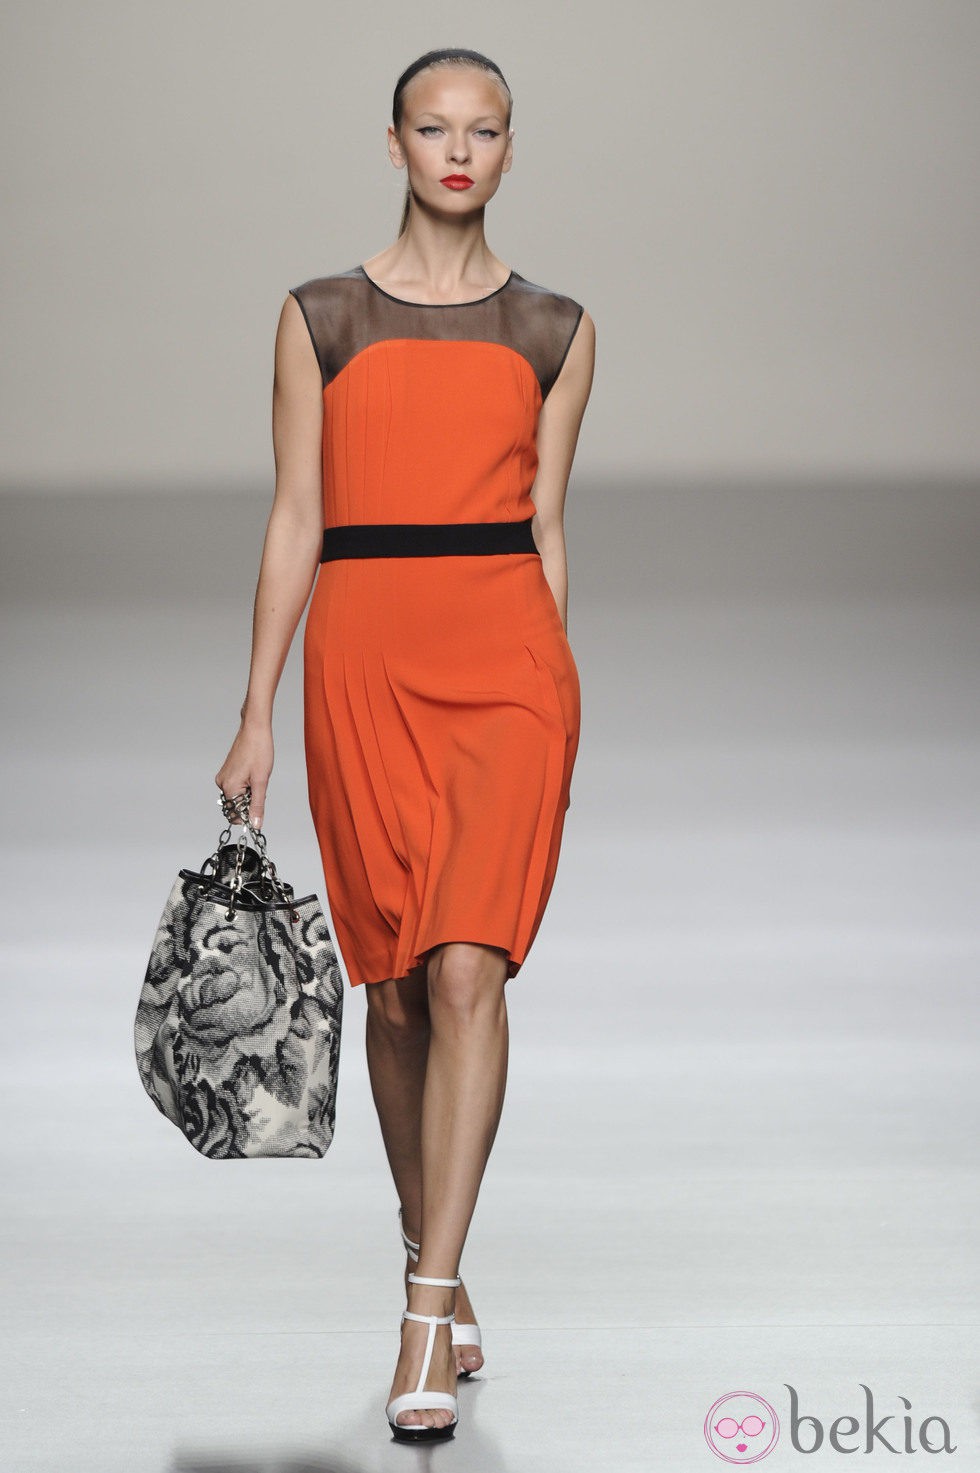 Vestido corto naranja con maxibolso de la colección primavera-verano 2013 de Roberto Torretta